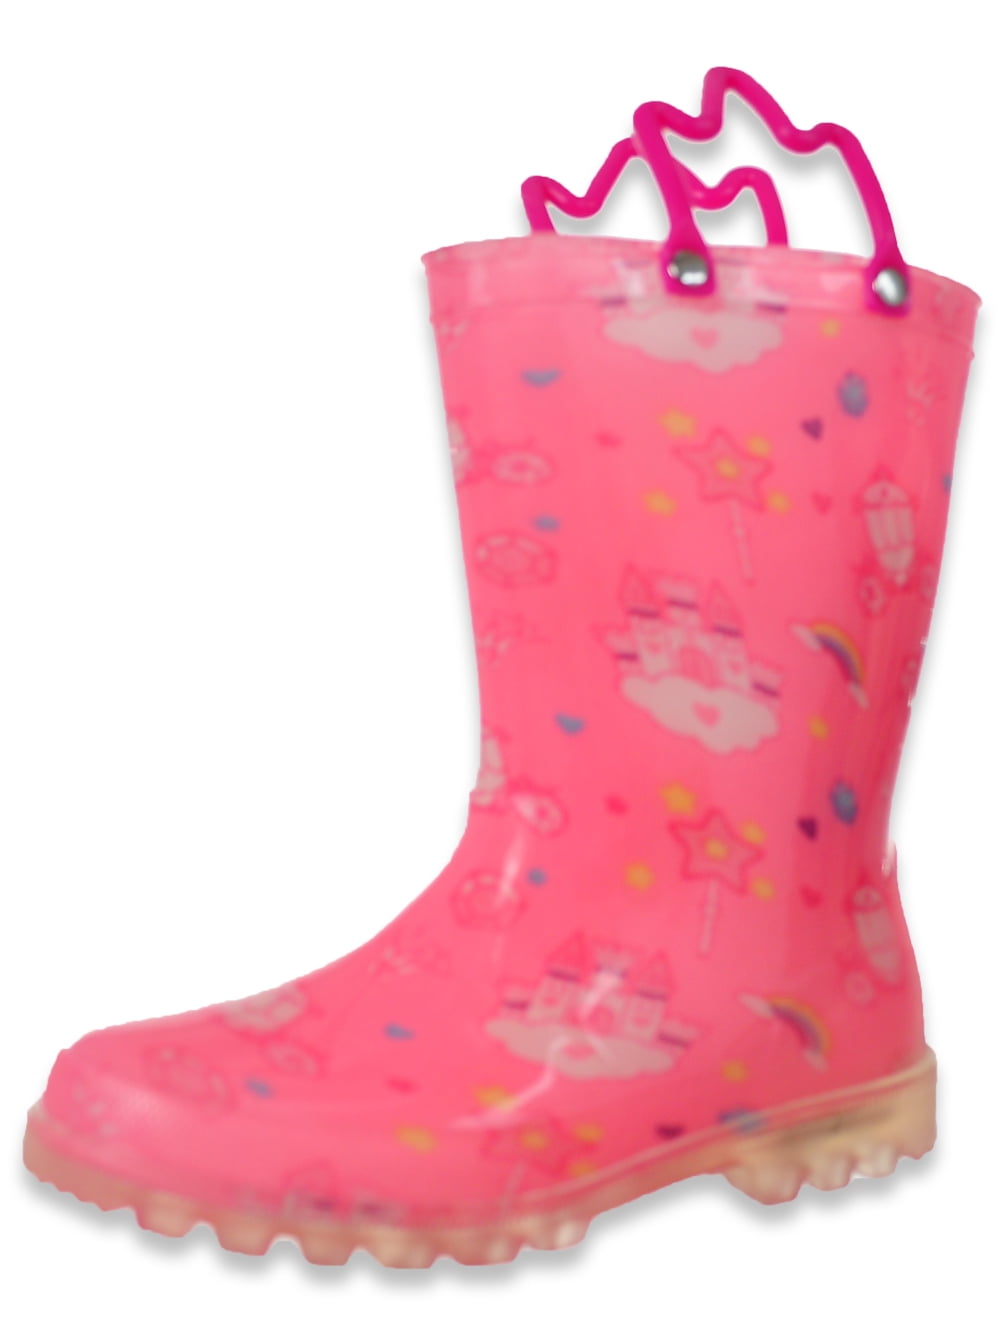 Cruz Kids Girls' Light-Up Princess Rain Boots - pink, 9 toddler ...